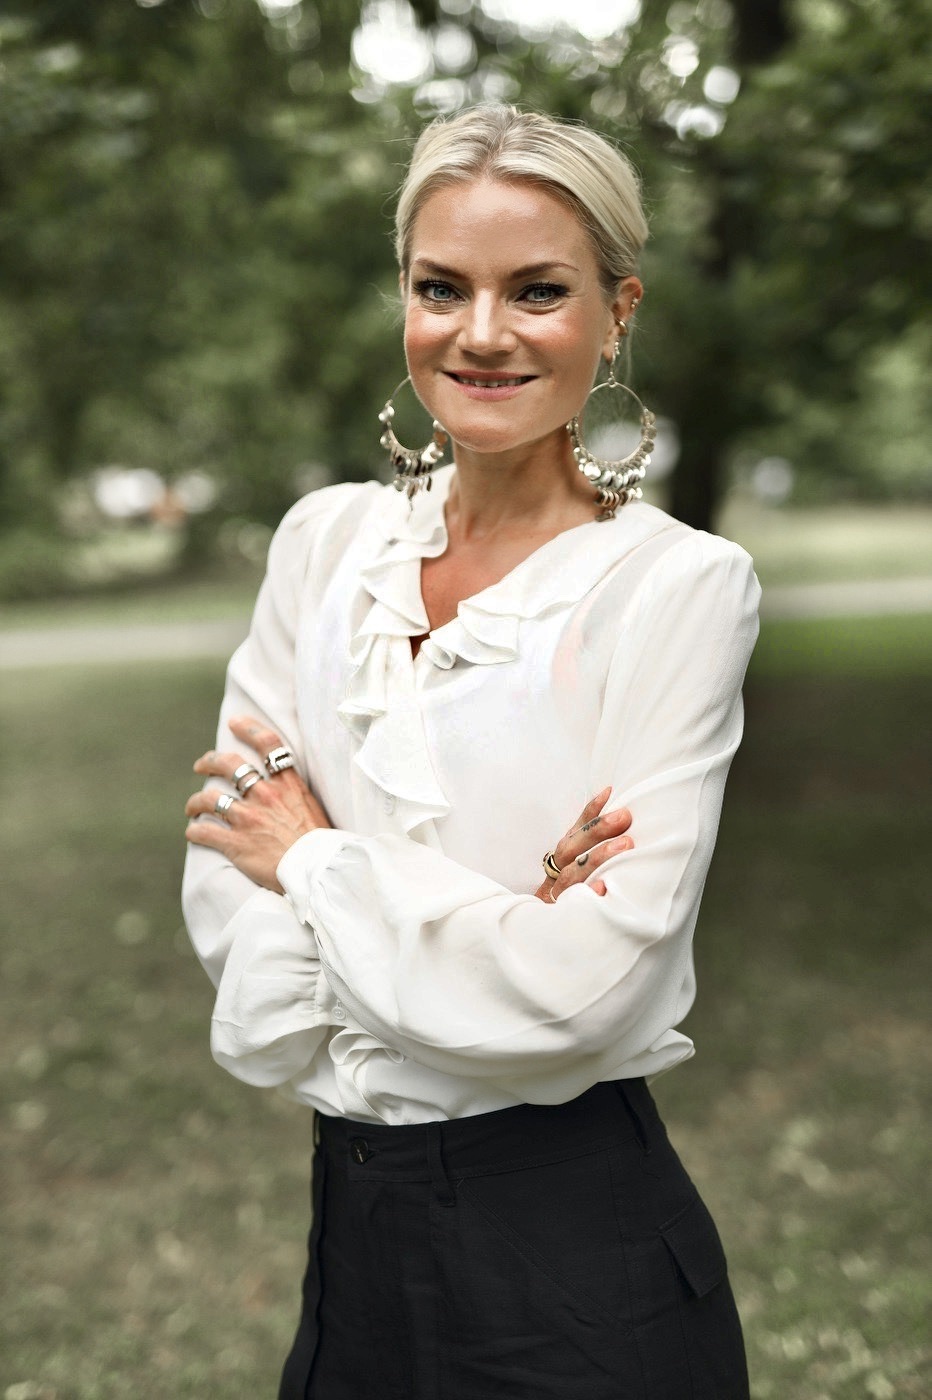 Maja Littmarck Production manager communication manager